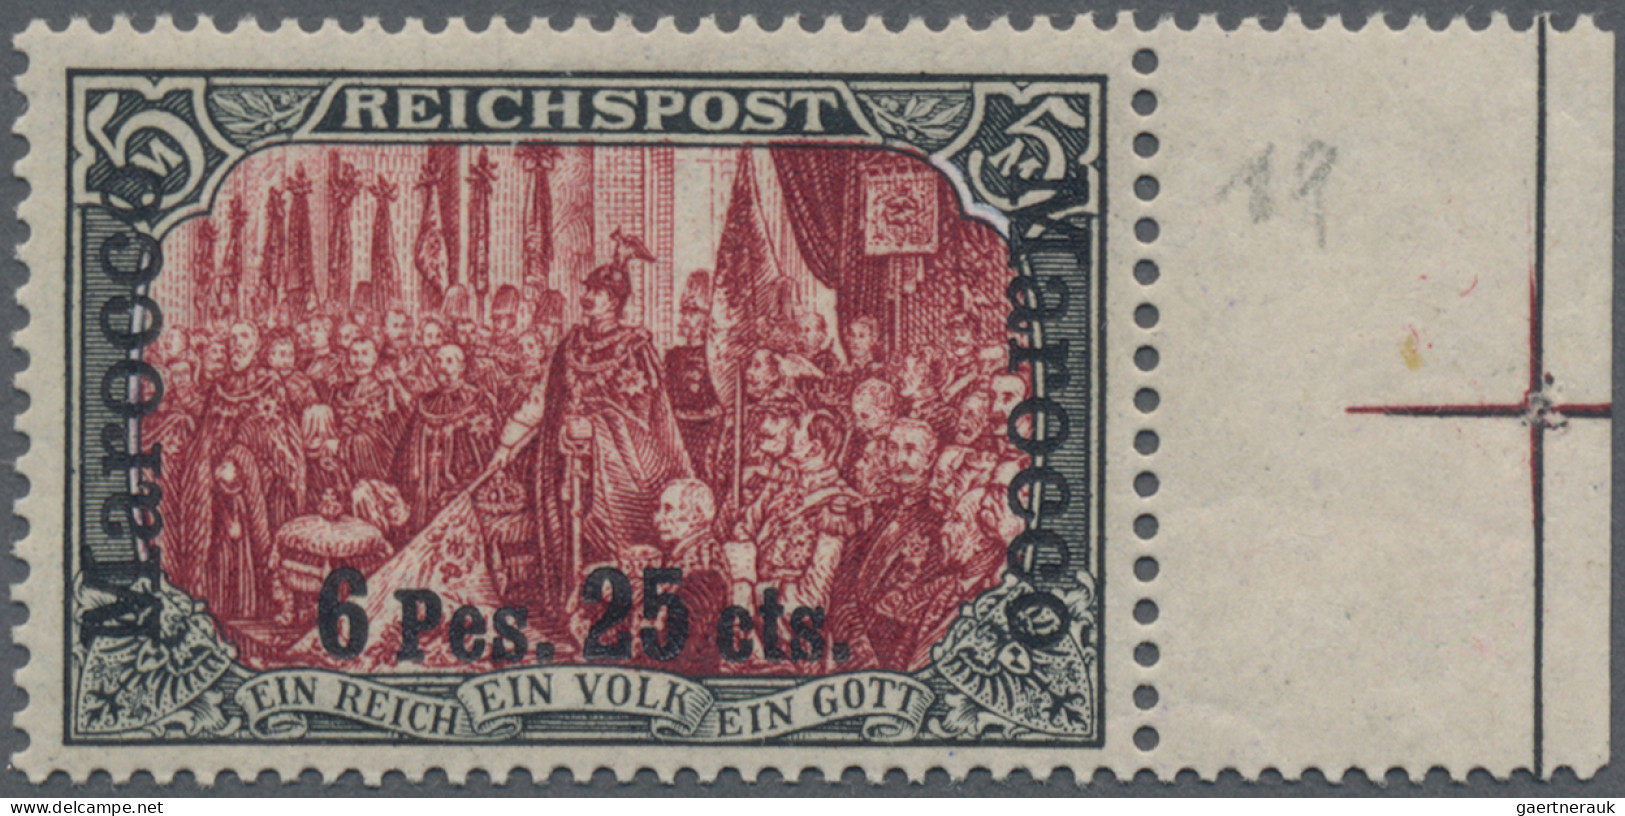 Deutsche Post In Marokko: 1900, 6 P 25 C Auf 5 Mark, Sog. Dünner Aufdruck, Type - Deutsche Post In Marokko